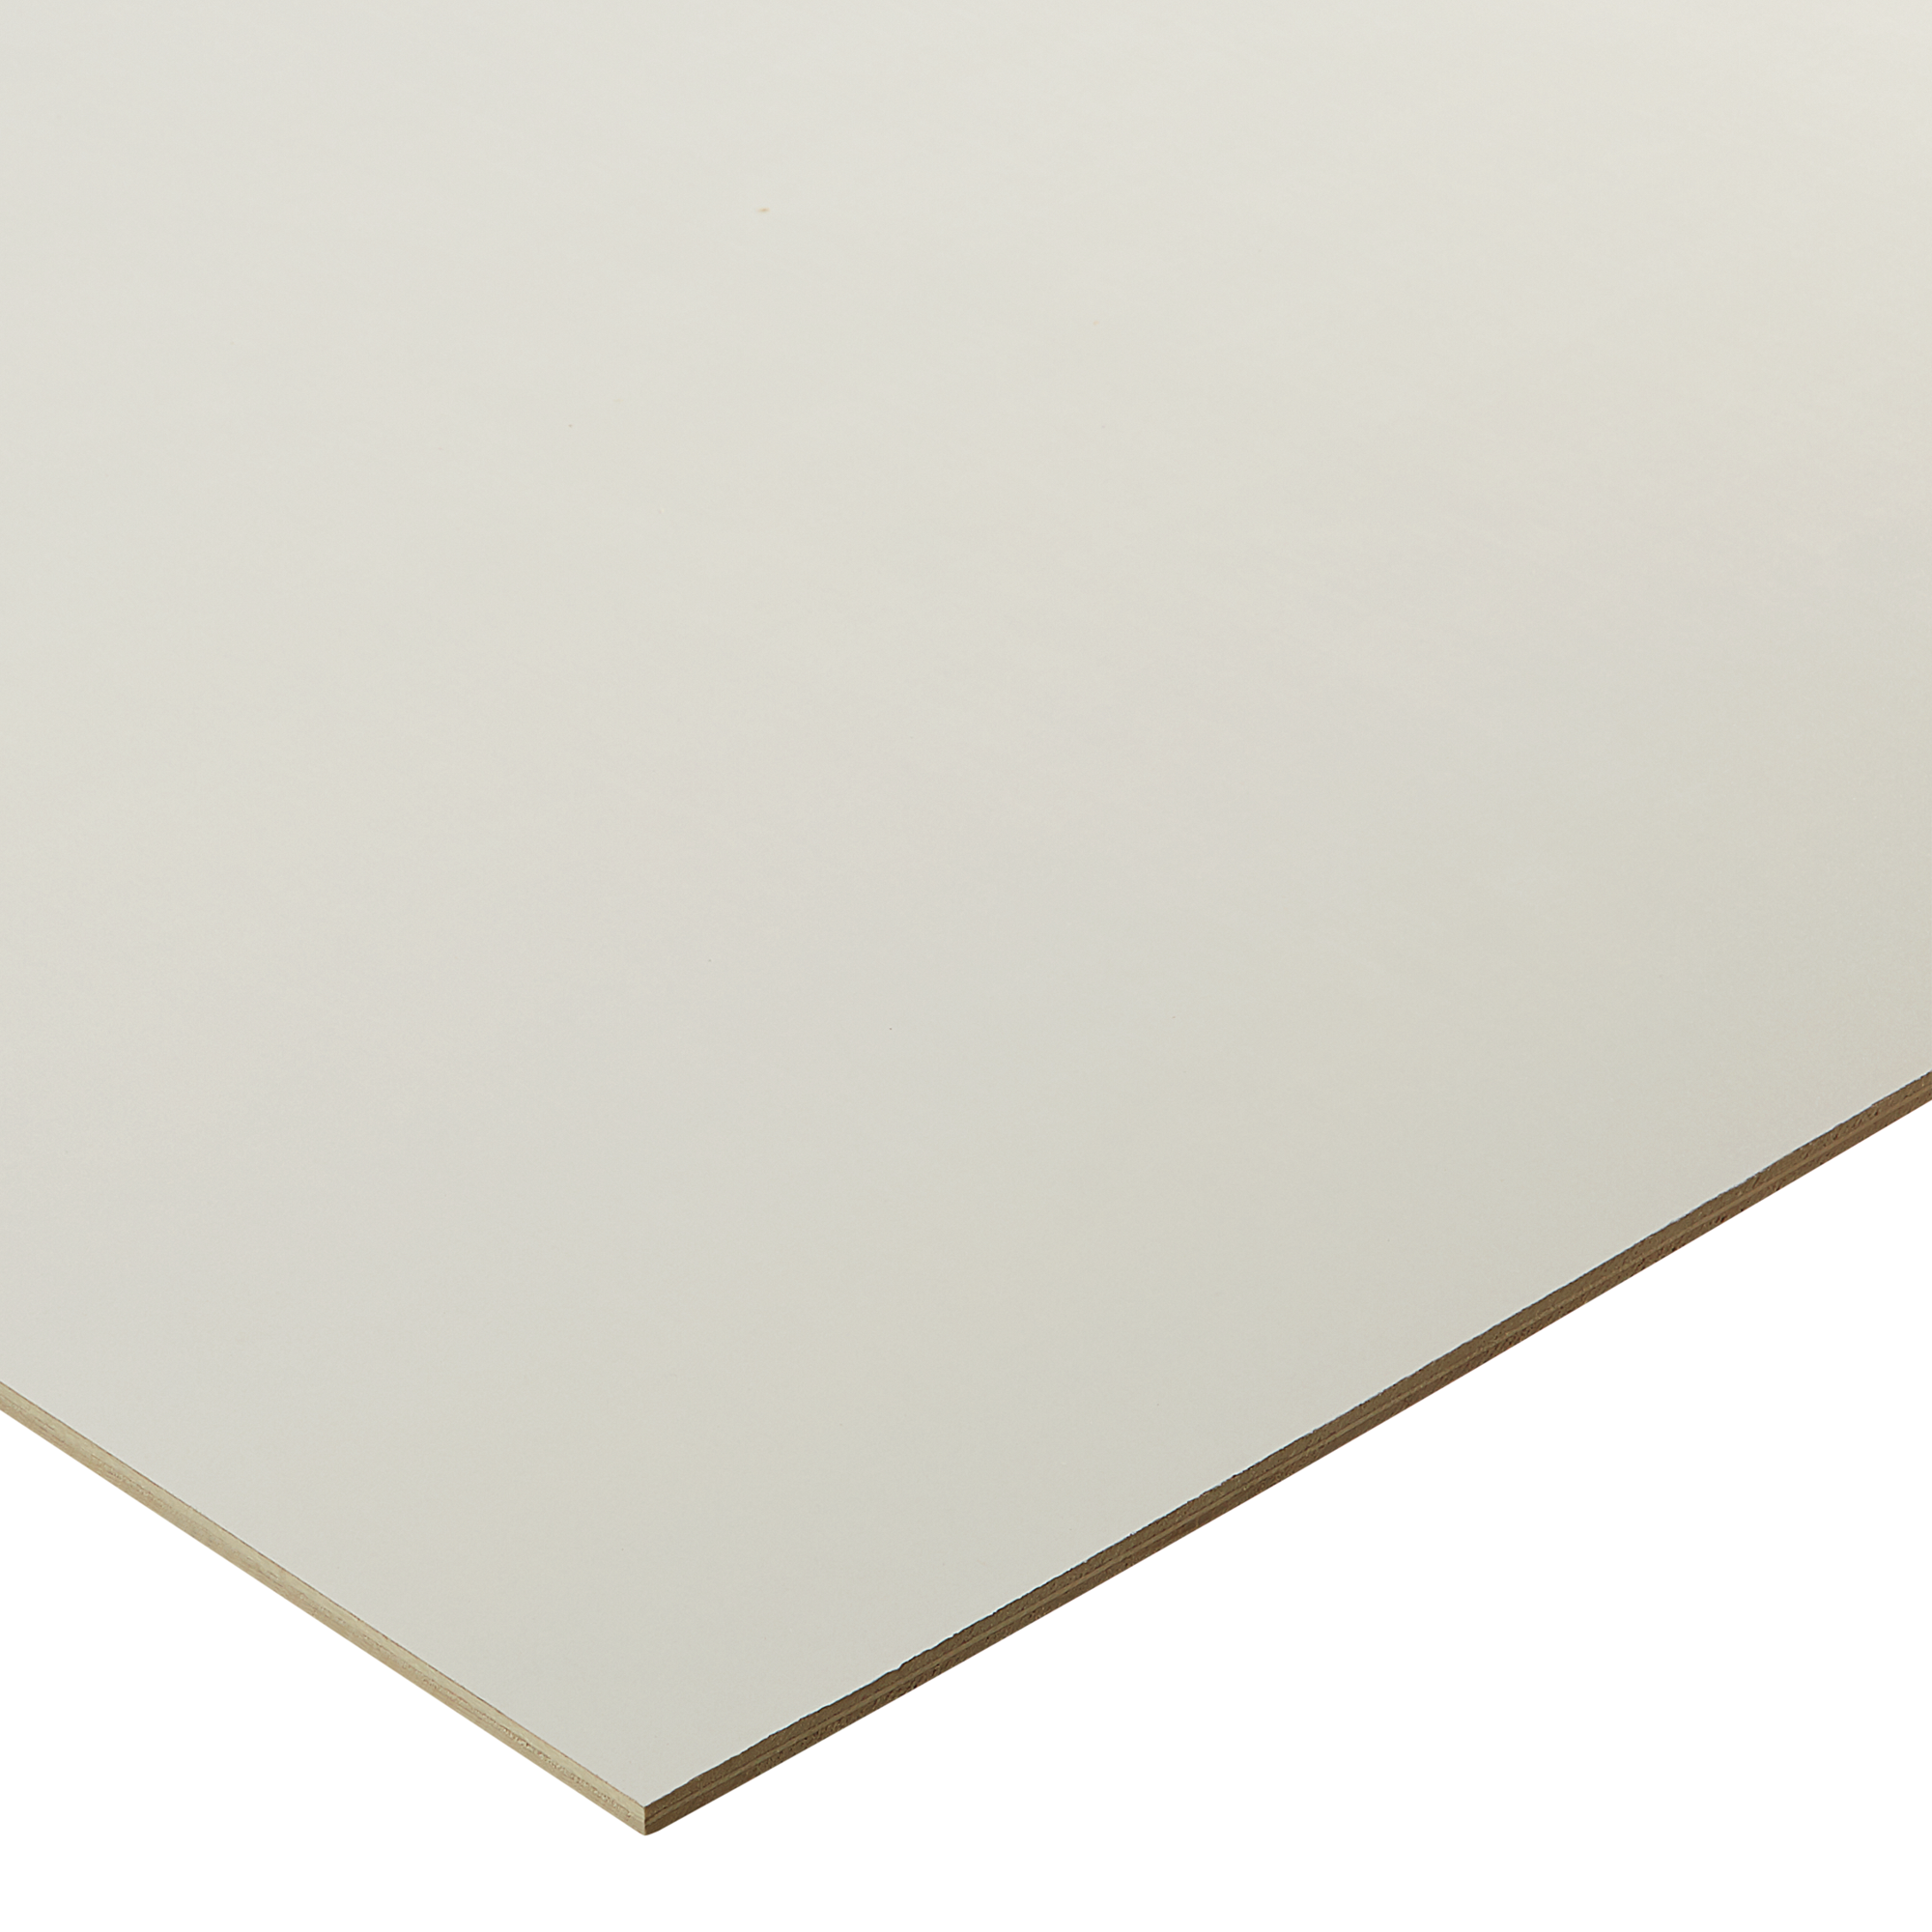 Sperrholzplatte Pappel/PVC 1200 x 600 x 6 mm + product picture